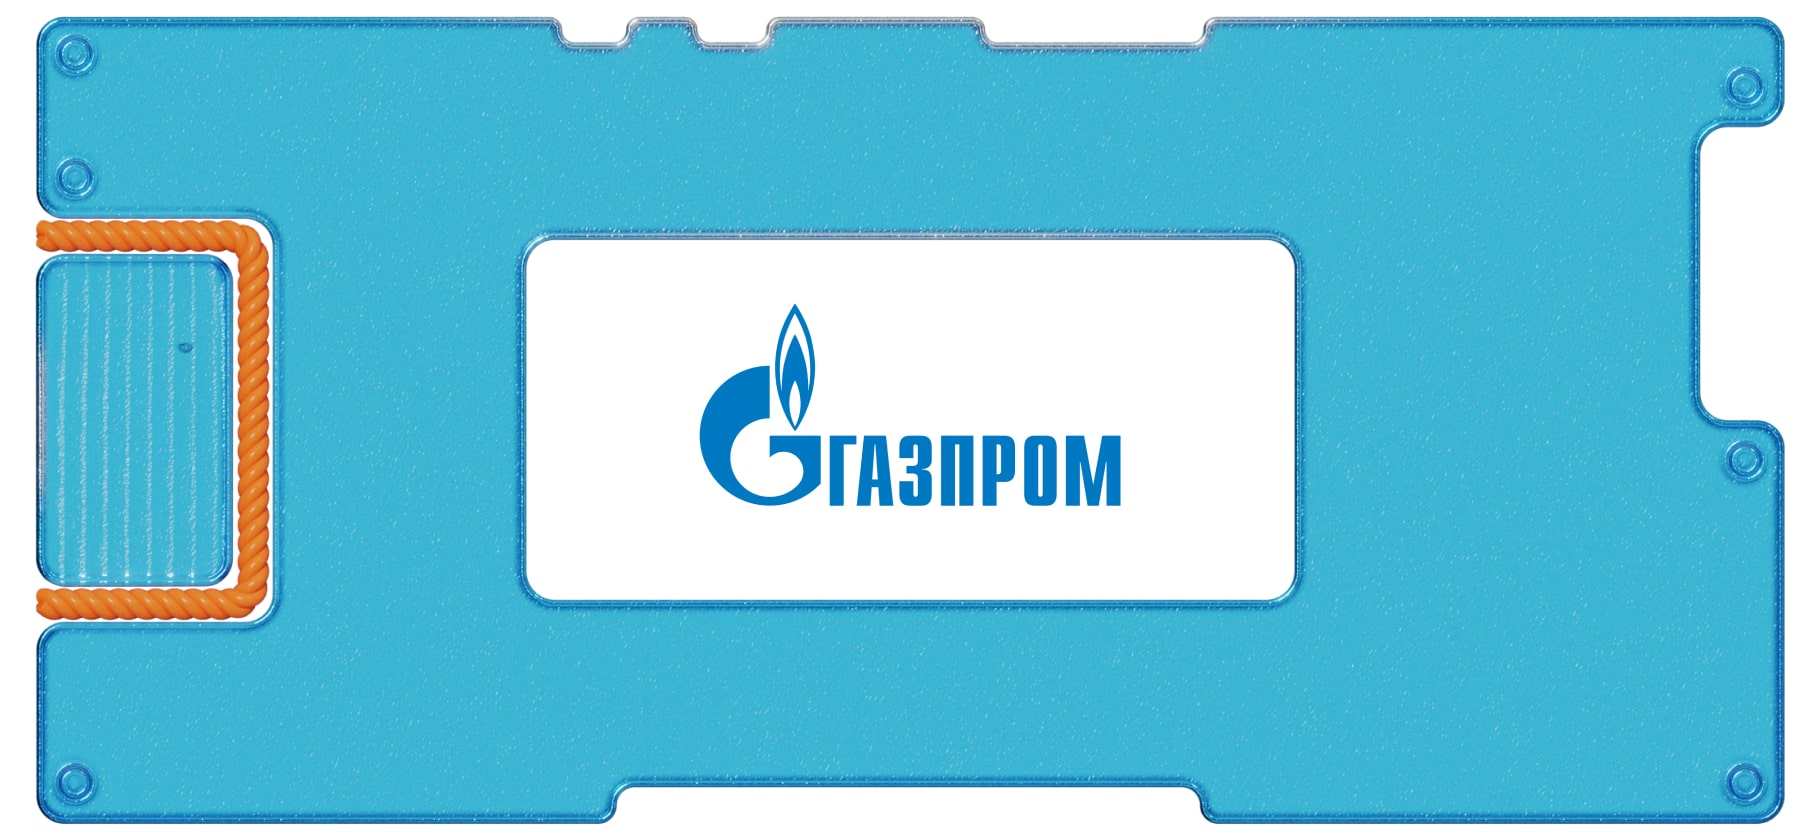 Прибыль «Газпрома» упала в 8 раз, но в 2021 году все будет иначе